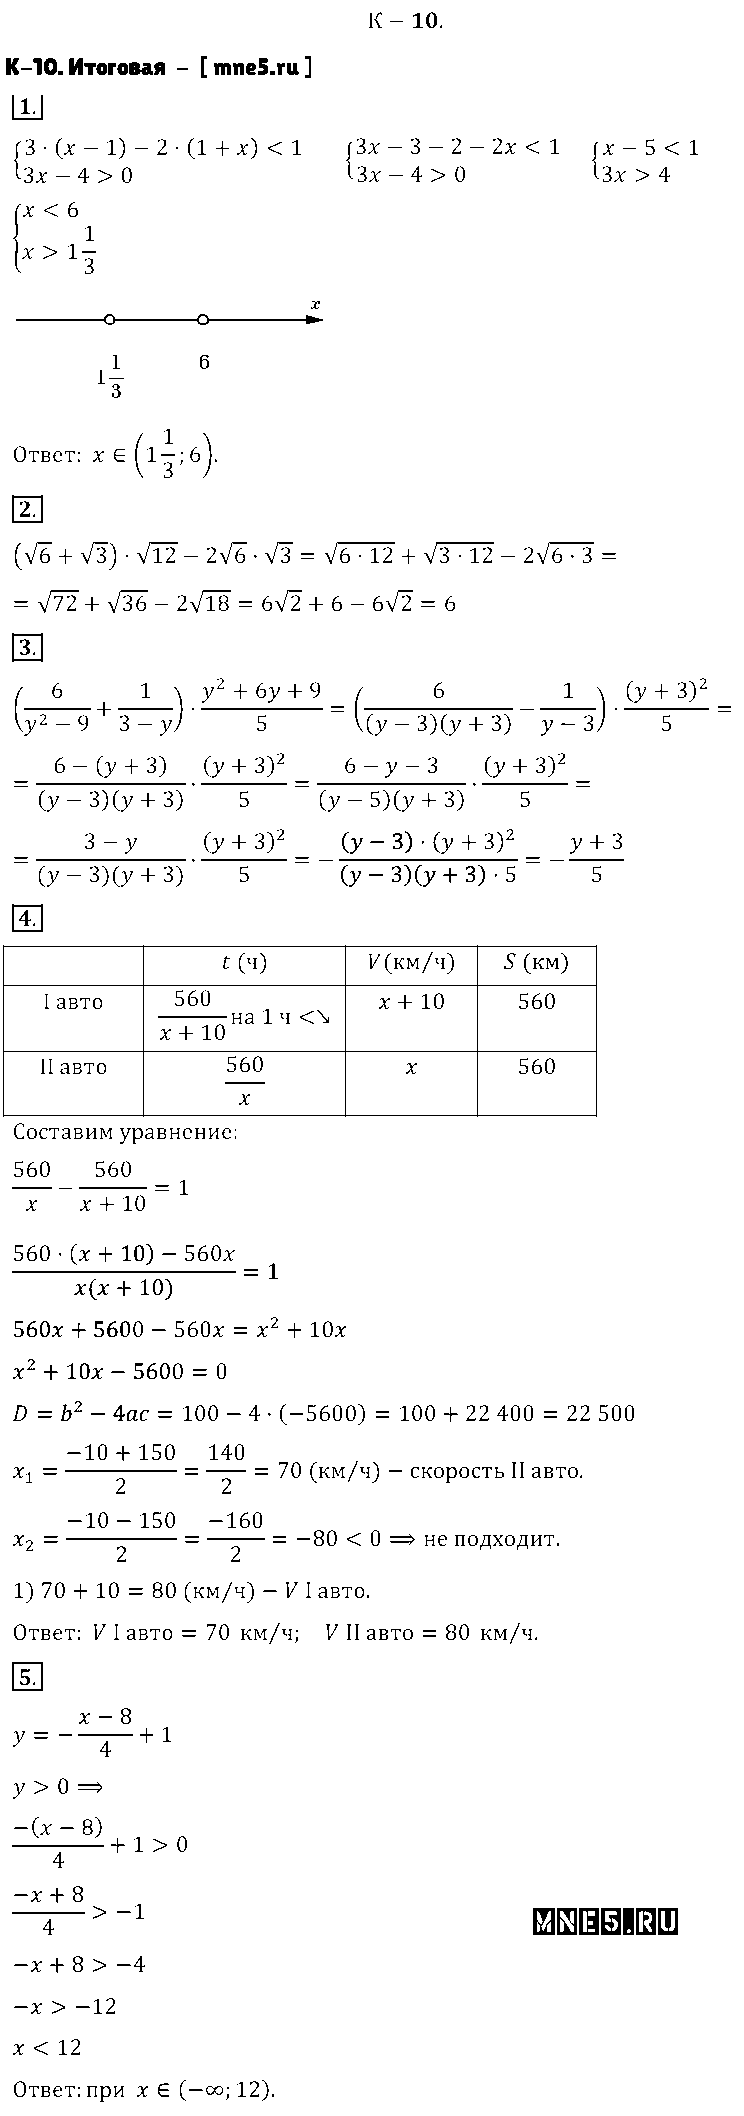 ГДЗ Алгебра 8 класс - K-10. Итоговая